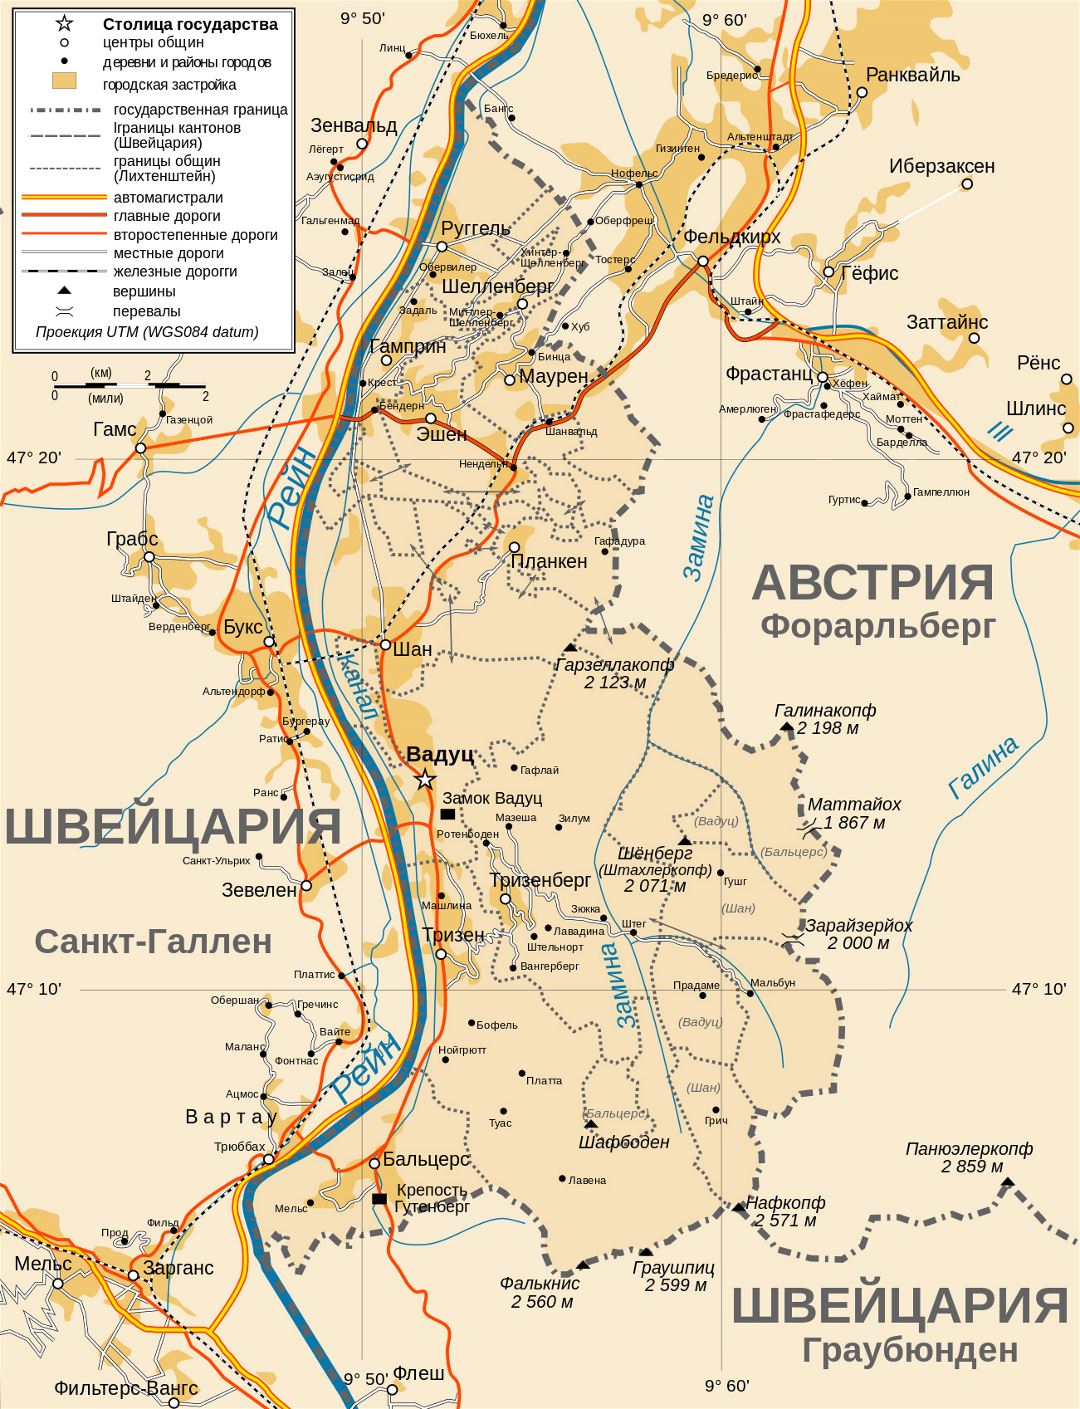 Grande detallada mapa político y administrativo de Liechtenstein con carreteras, ciudades y pueblos en ruso